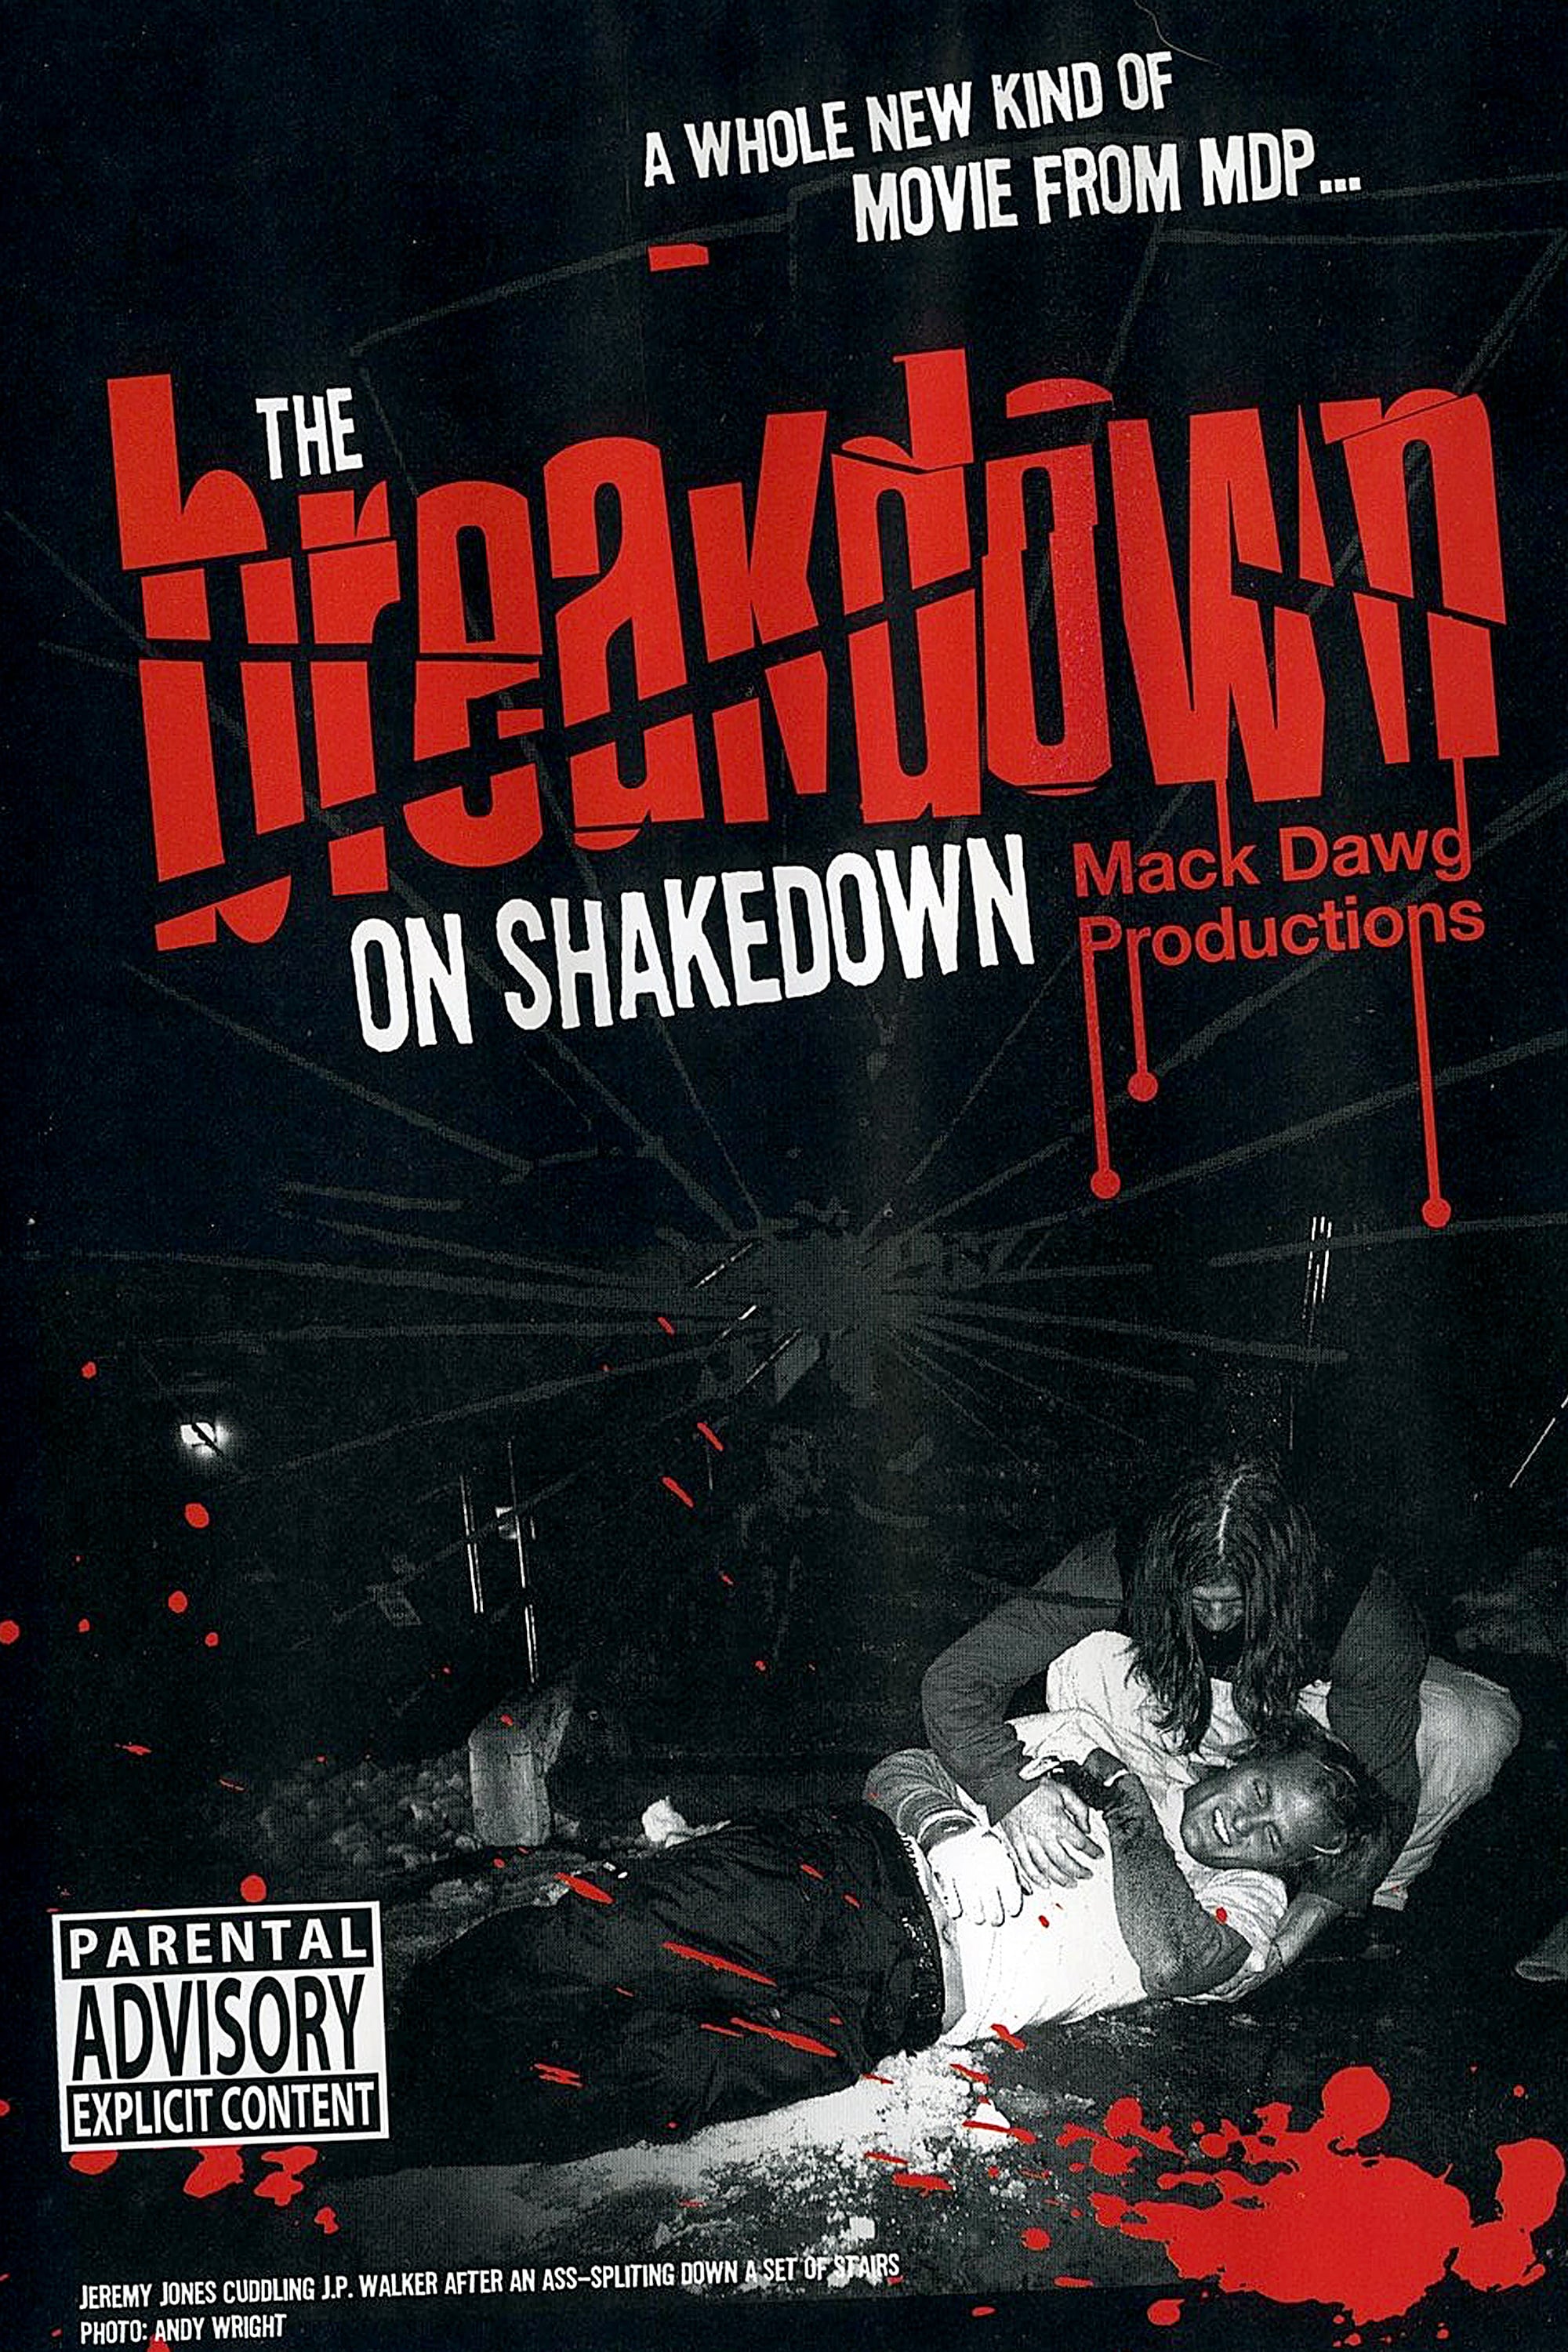 The Breakdown on Shakedown